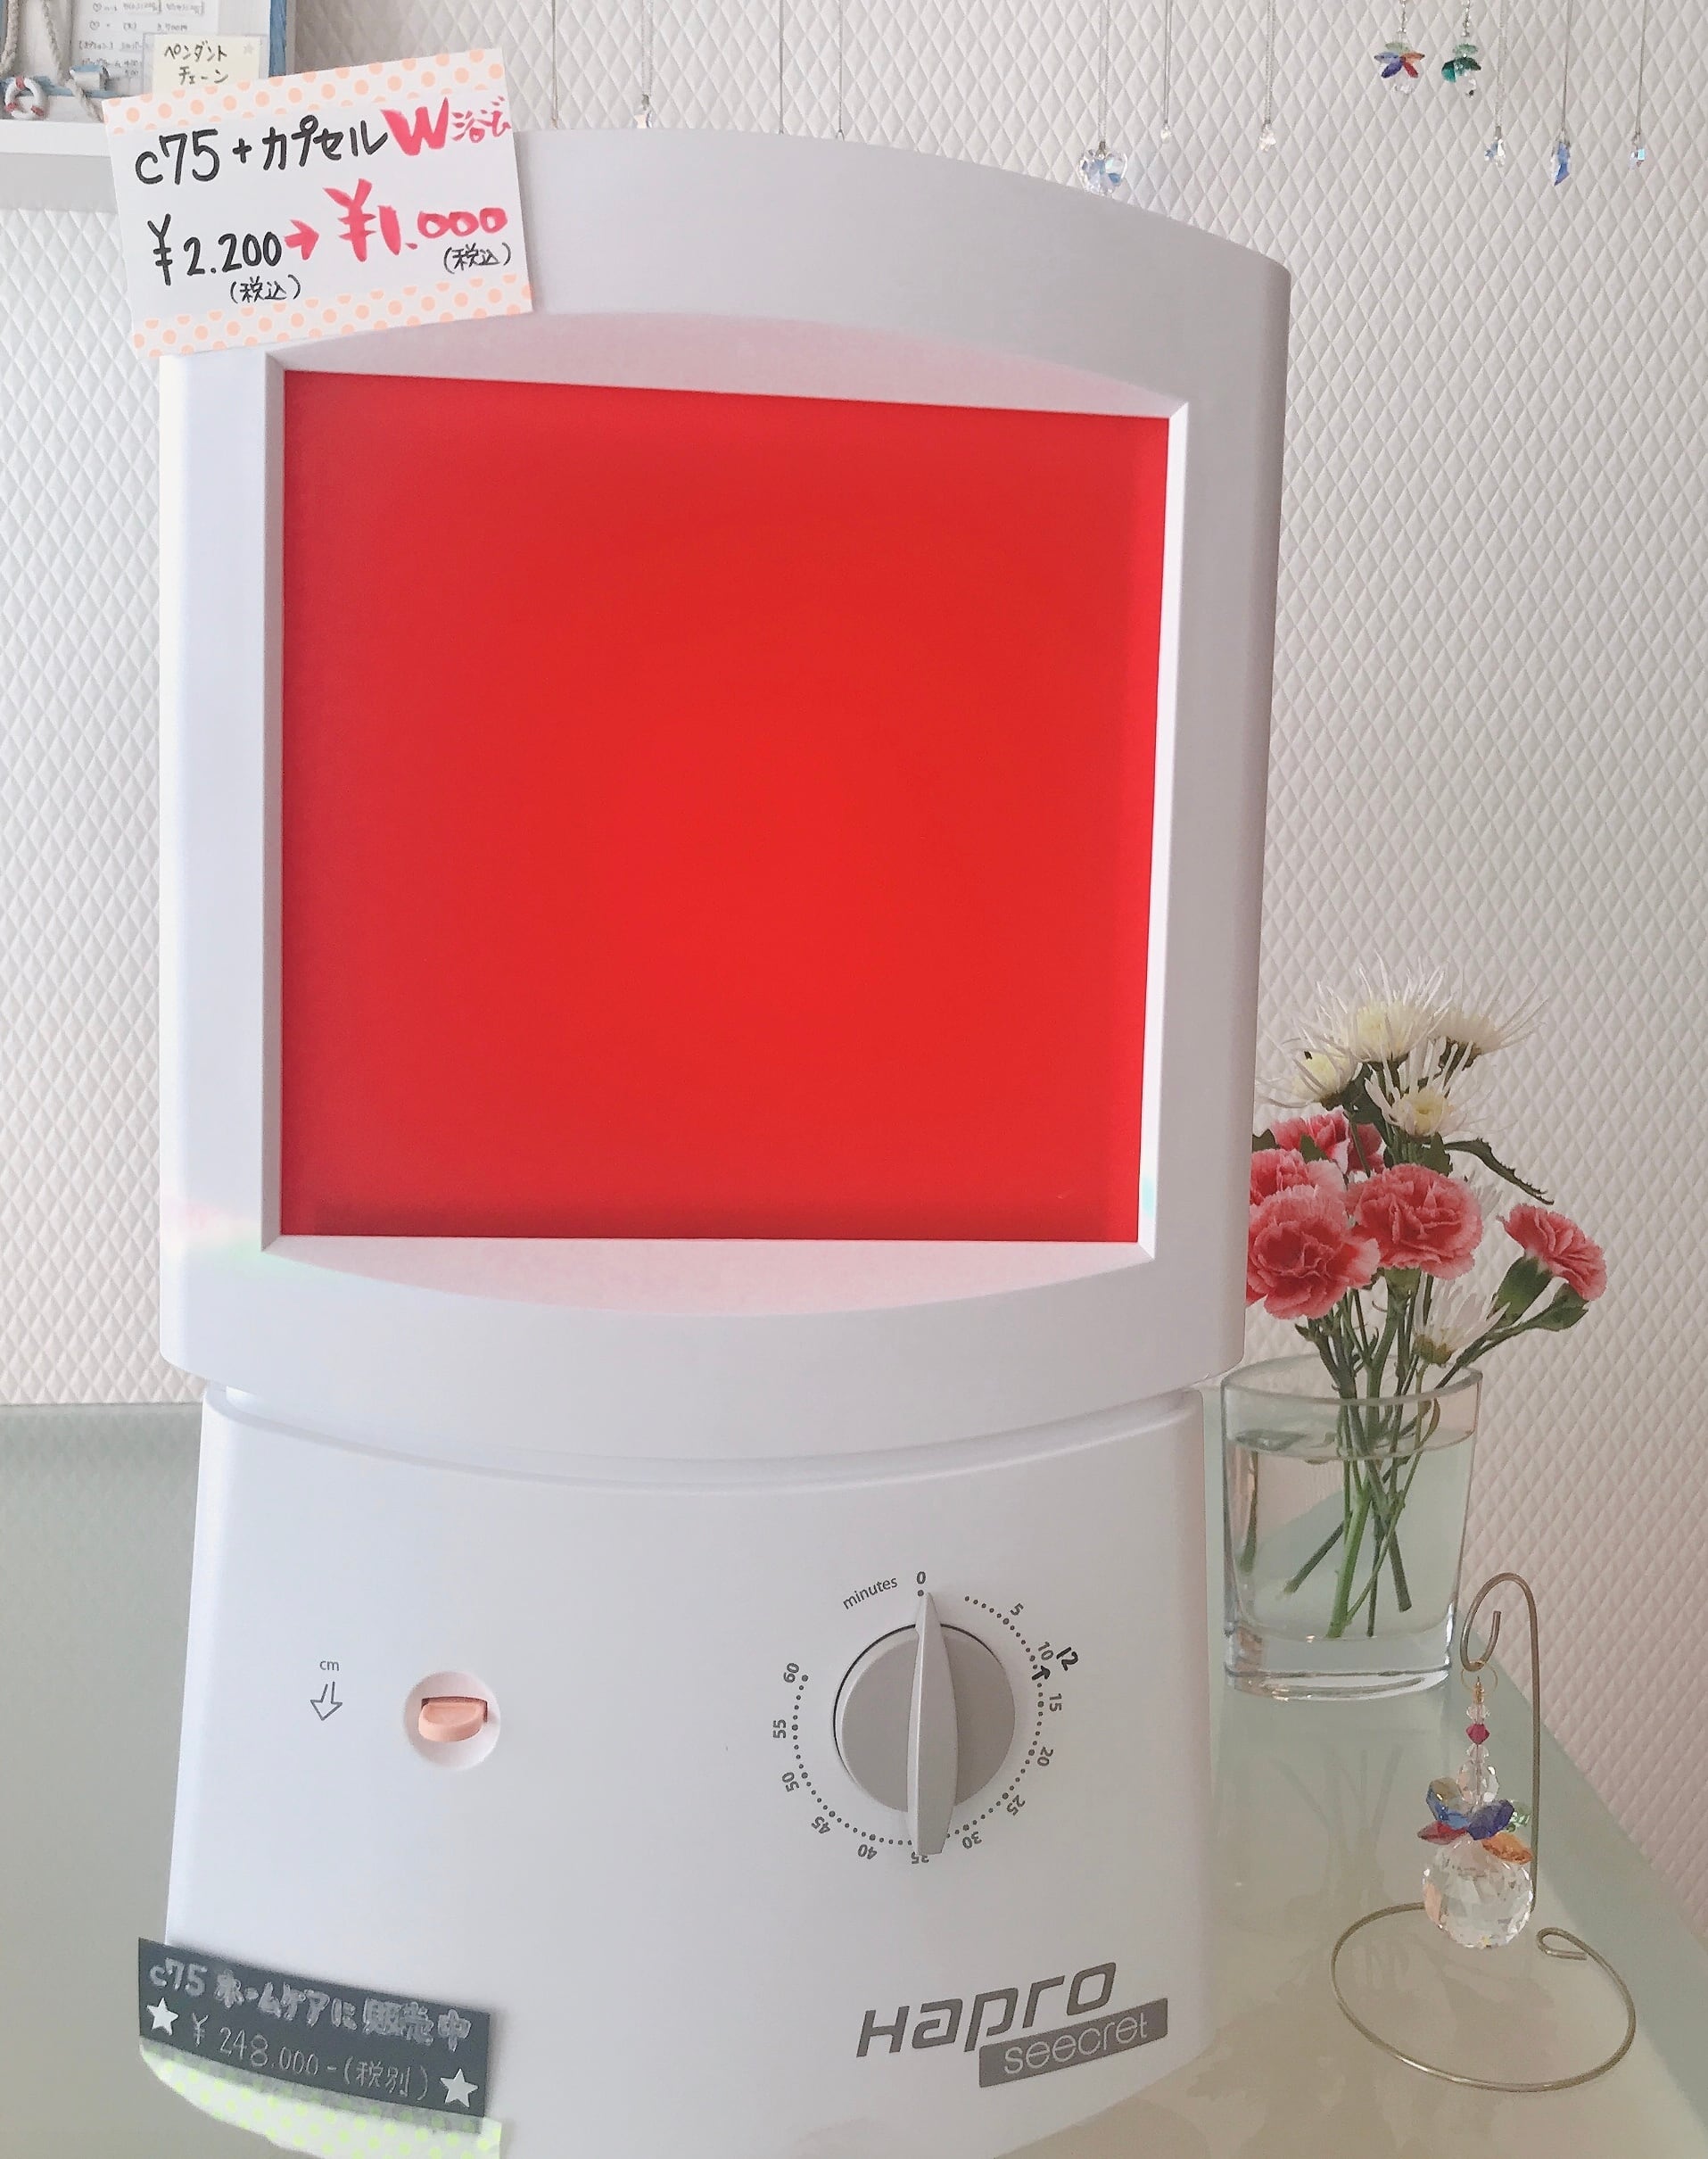 ハプロ シークレット フェイシャル コラーゲンマシン 美顔器 美肌 美容 LED